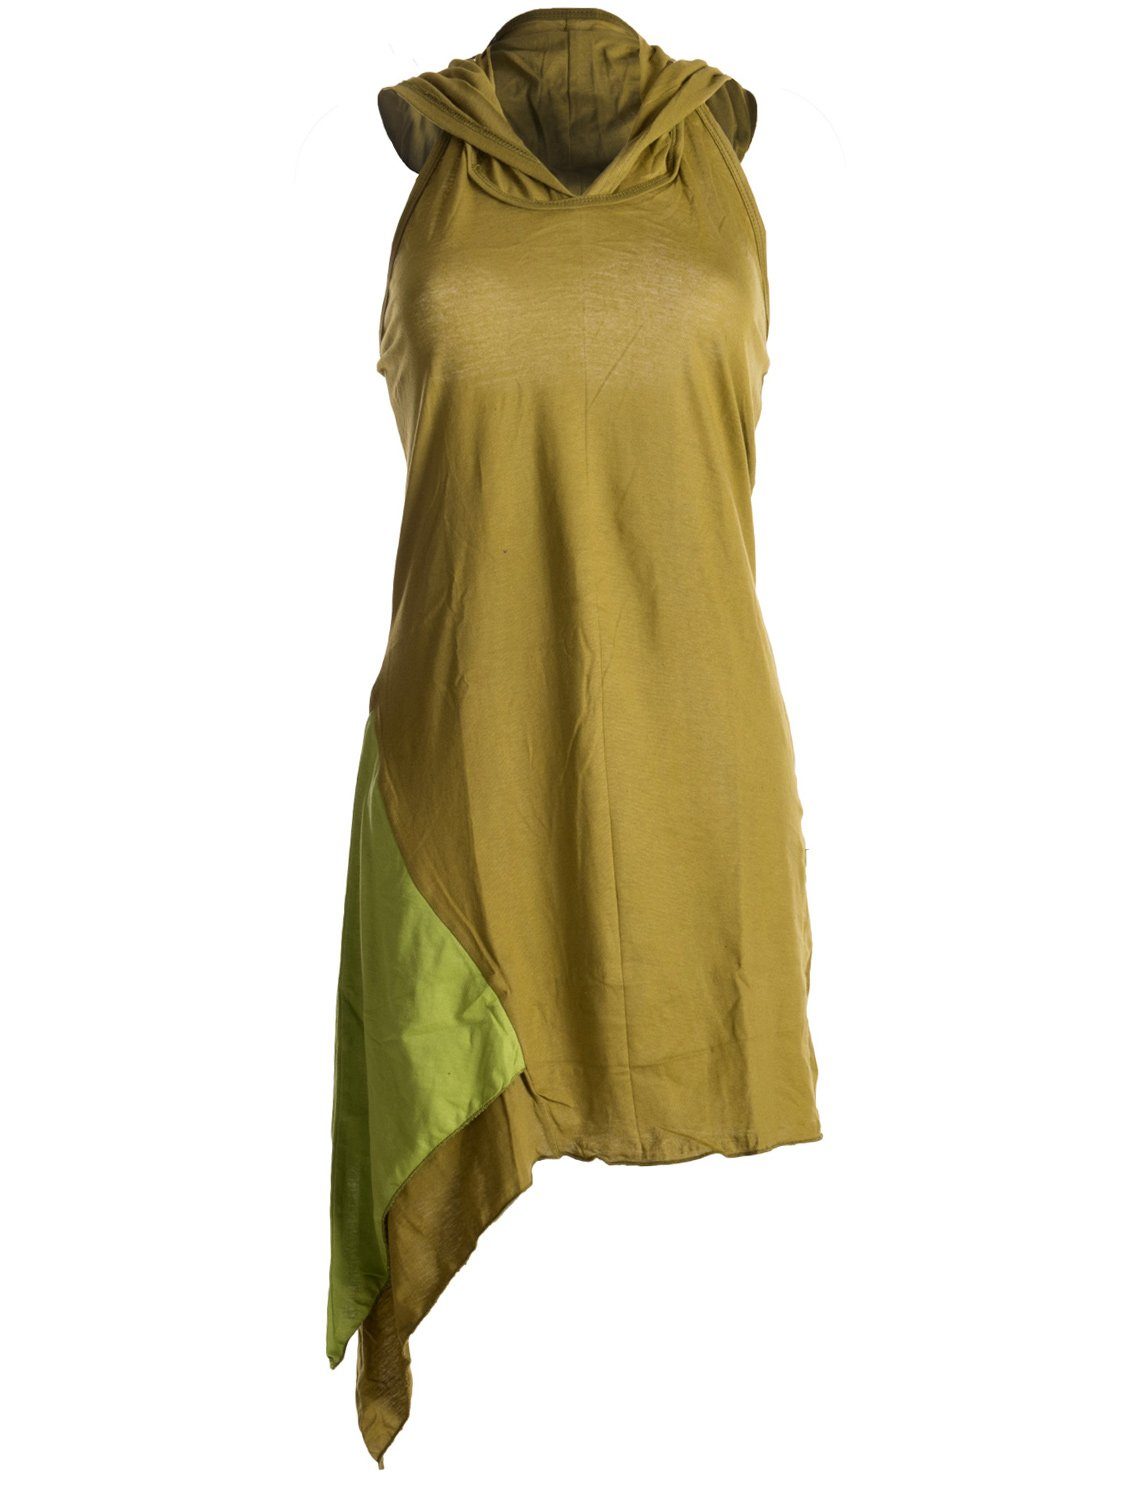 Vishes Neckholderkleid Asymmetrisches Lagenlook Neckholder Zipfeltunika Hippie, Boho, Ethno, Elfen Style olive